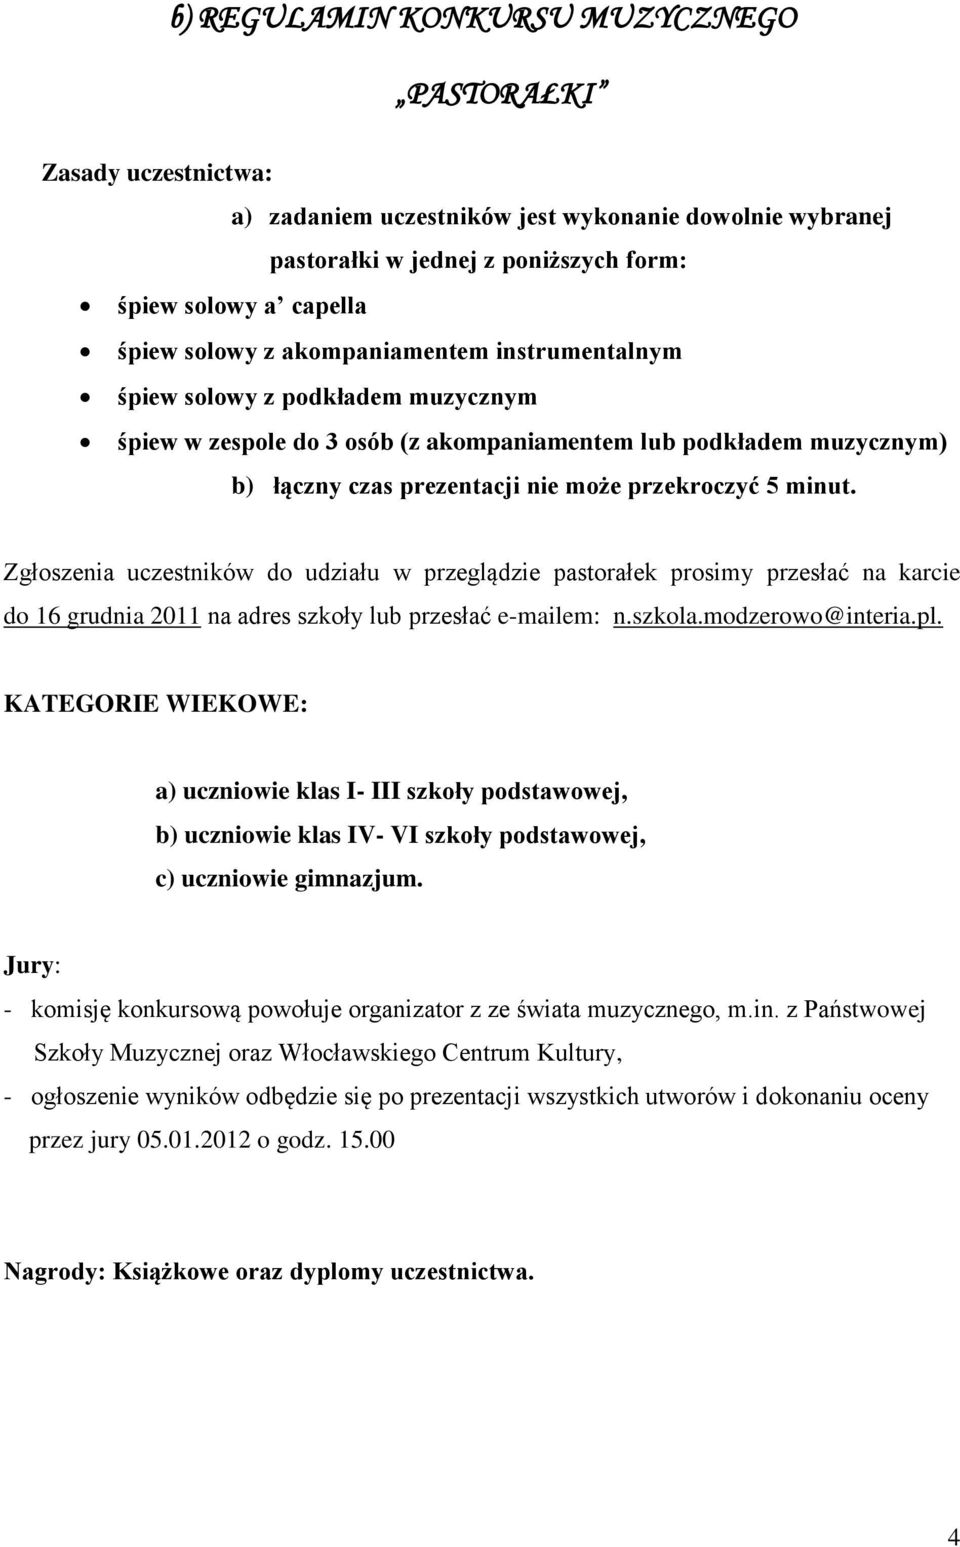 Zgłoszenia uczestników do udziału w przeglądzie pastorałek prosimy przesłać na karcie do 16 grudnia 2011 na adres szkoły lub przesłać e-mailem: n.szkola.modzerowo@interia.pl.